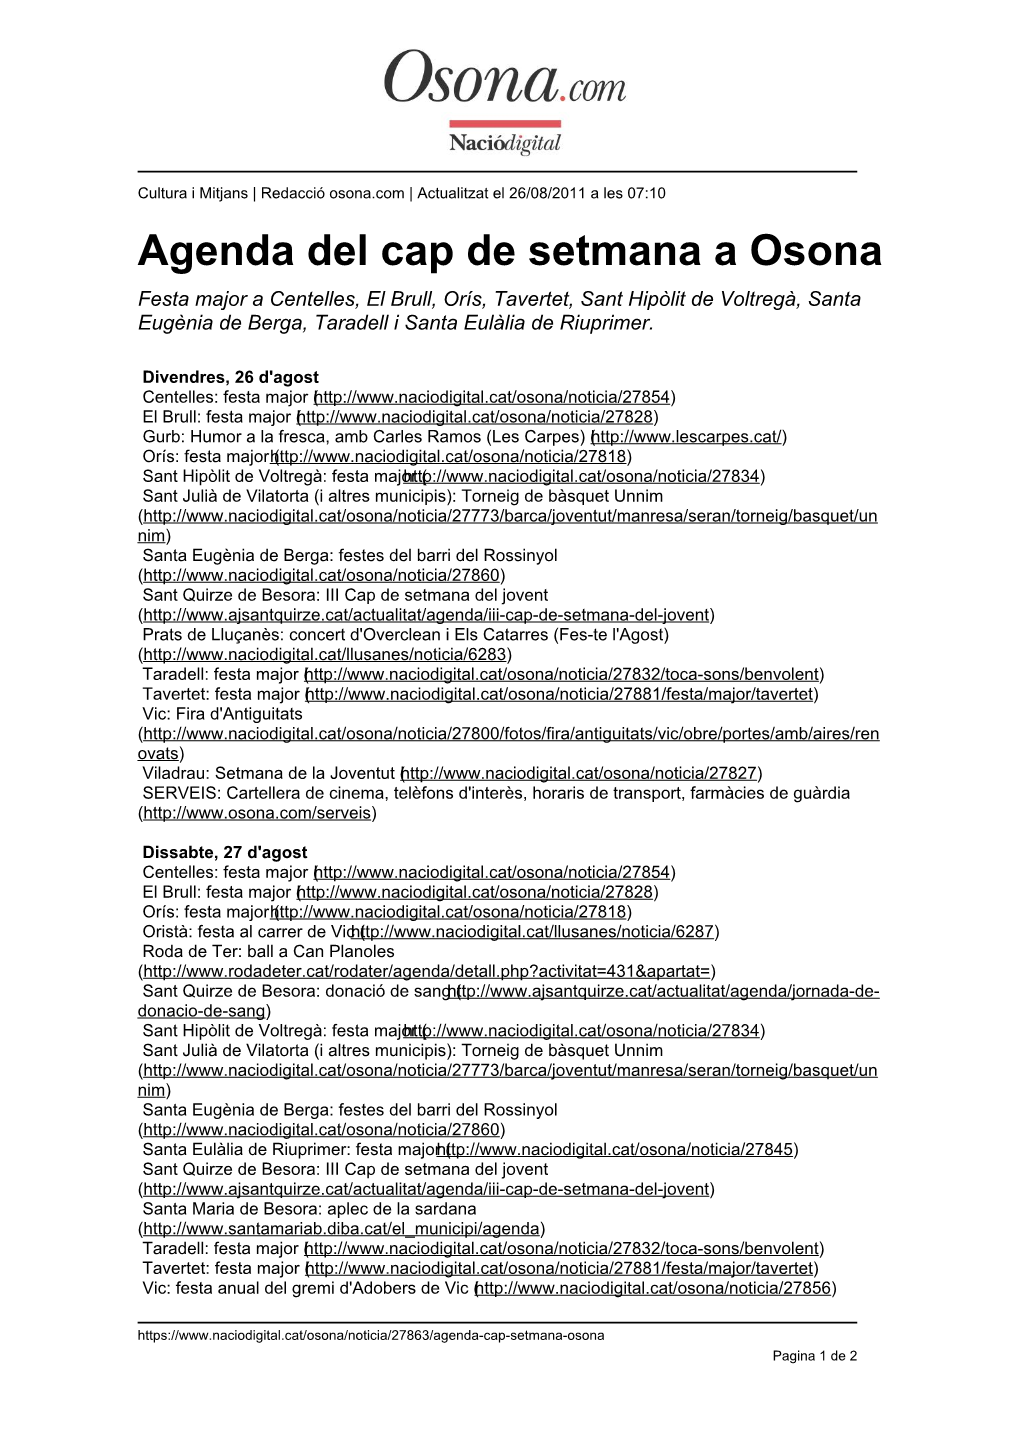 Agenda Del Cap De Setmana a Osona